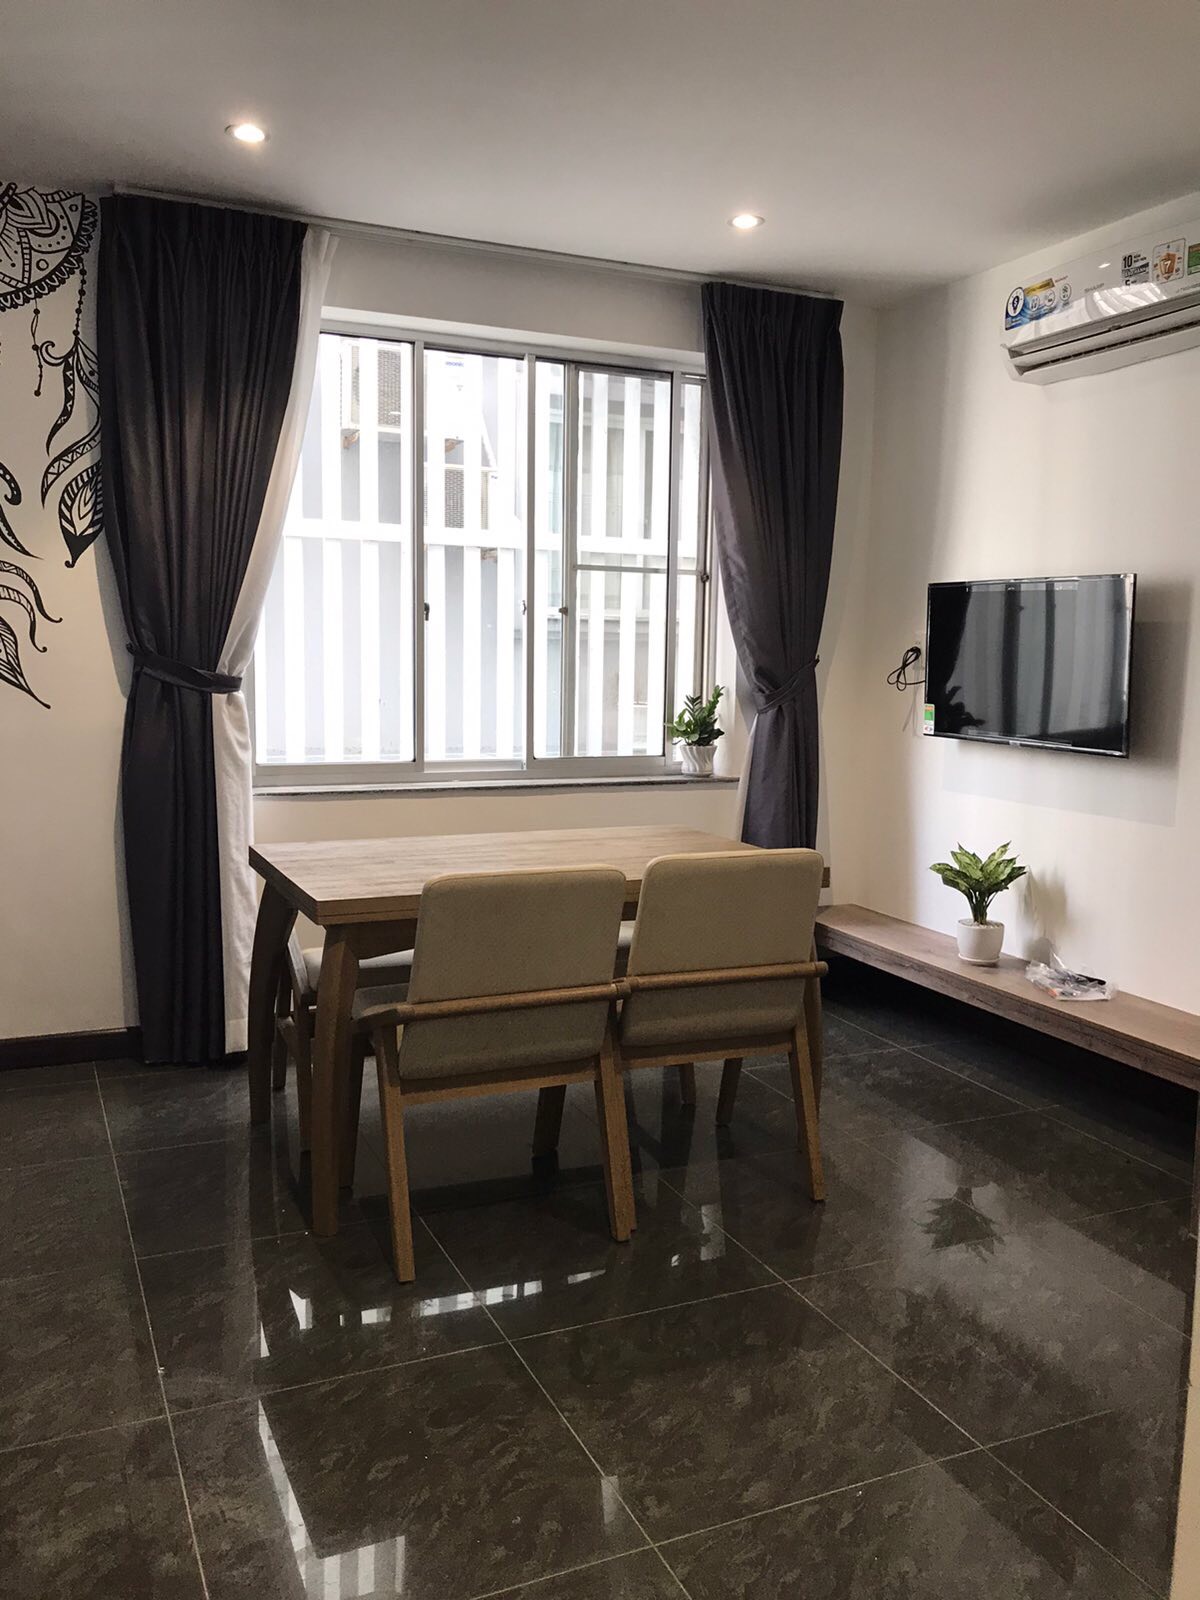 Cho thuê căn hộ dịch vụ đẹp kiểu studio trong Phú Mỹ Hưng, Q7, giá: 7 triệu/tháng (ảnh thật, nhà mới 100%) 